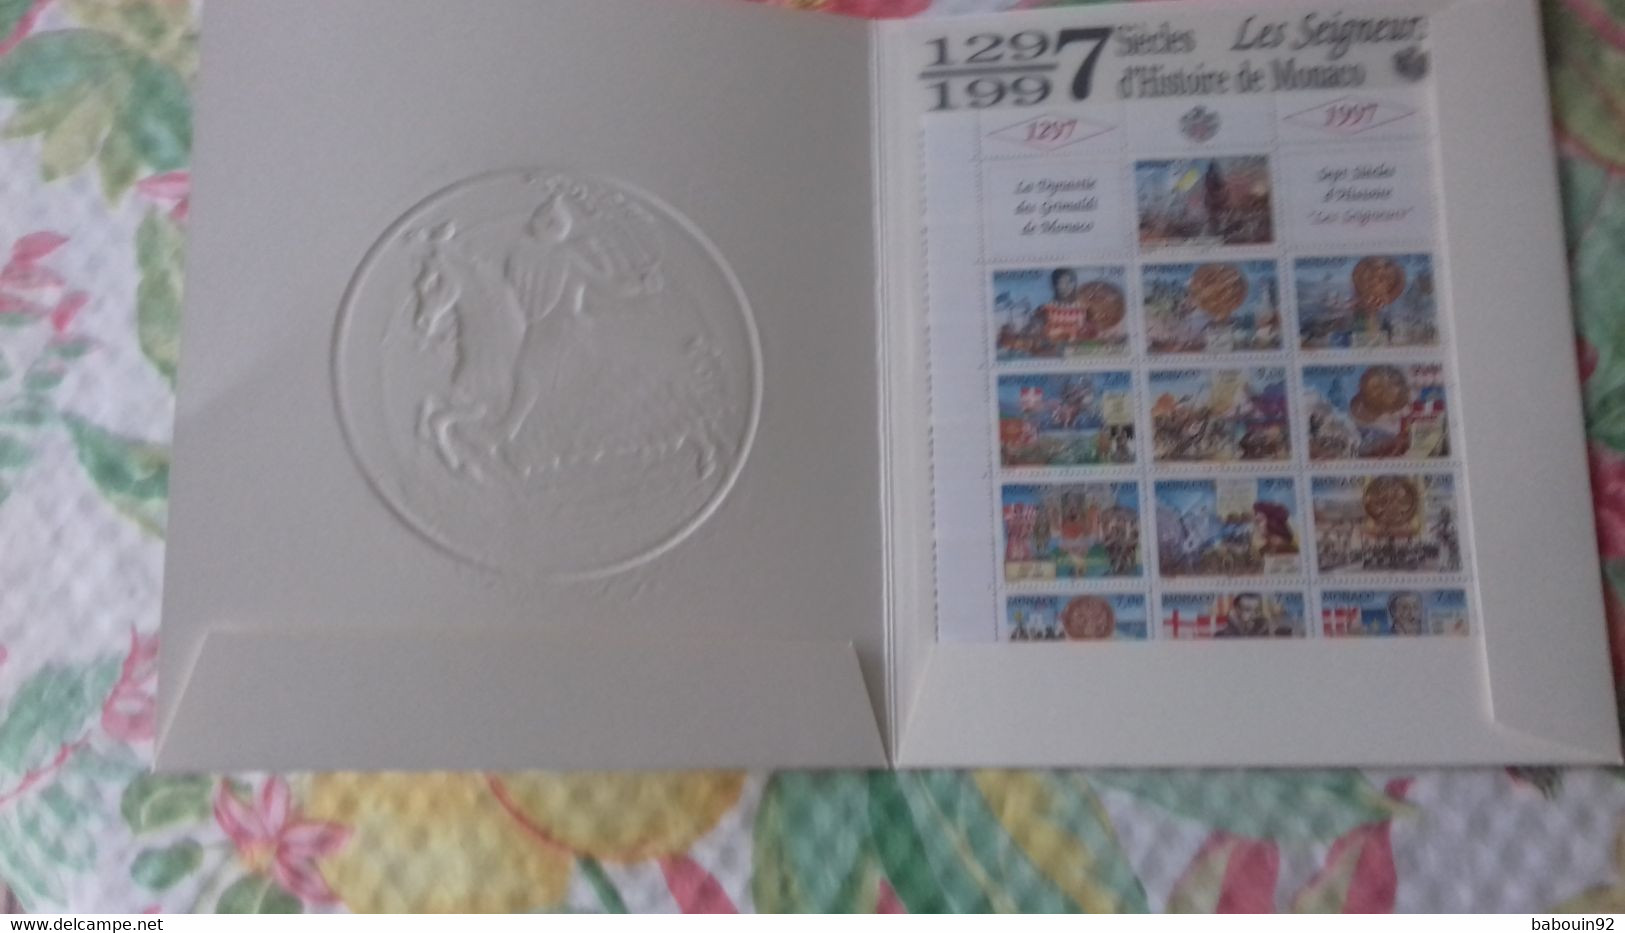 Monaco N° Y&T 2089 à2101 ** En Mini-feuillesous étui Cartonné Avec Explications - Unused Stamps